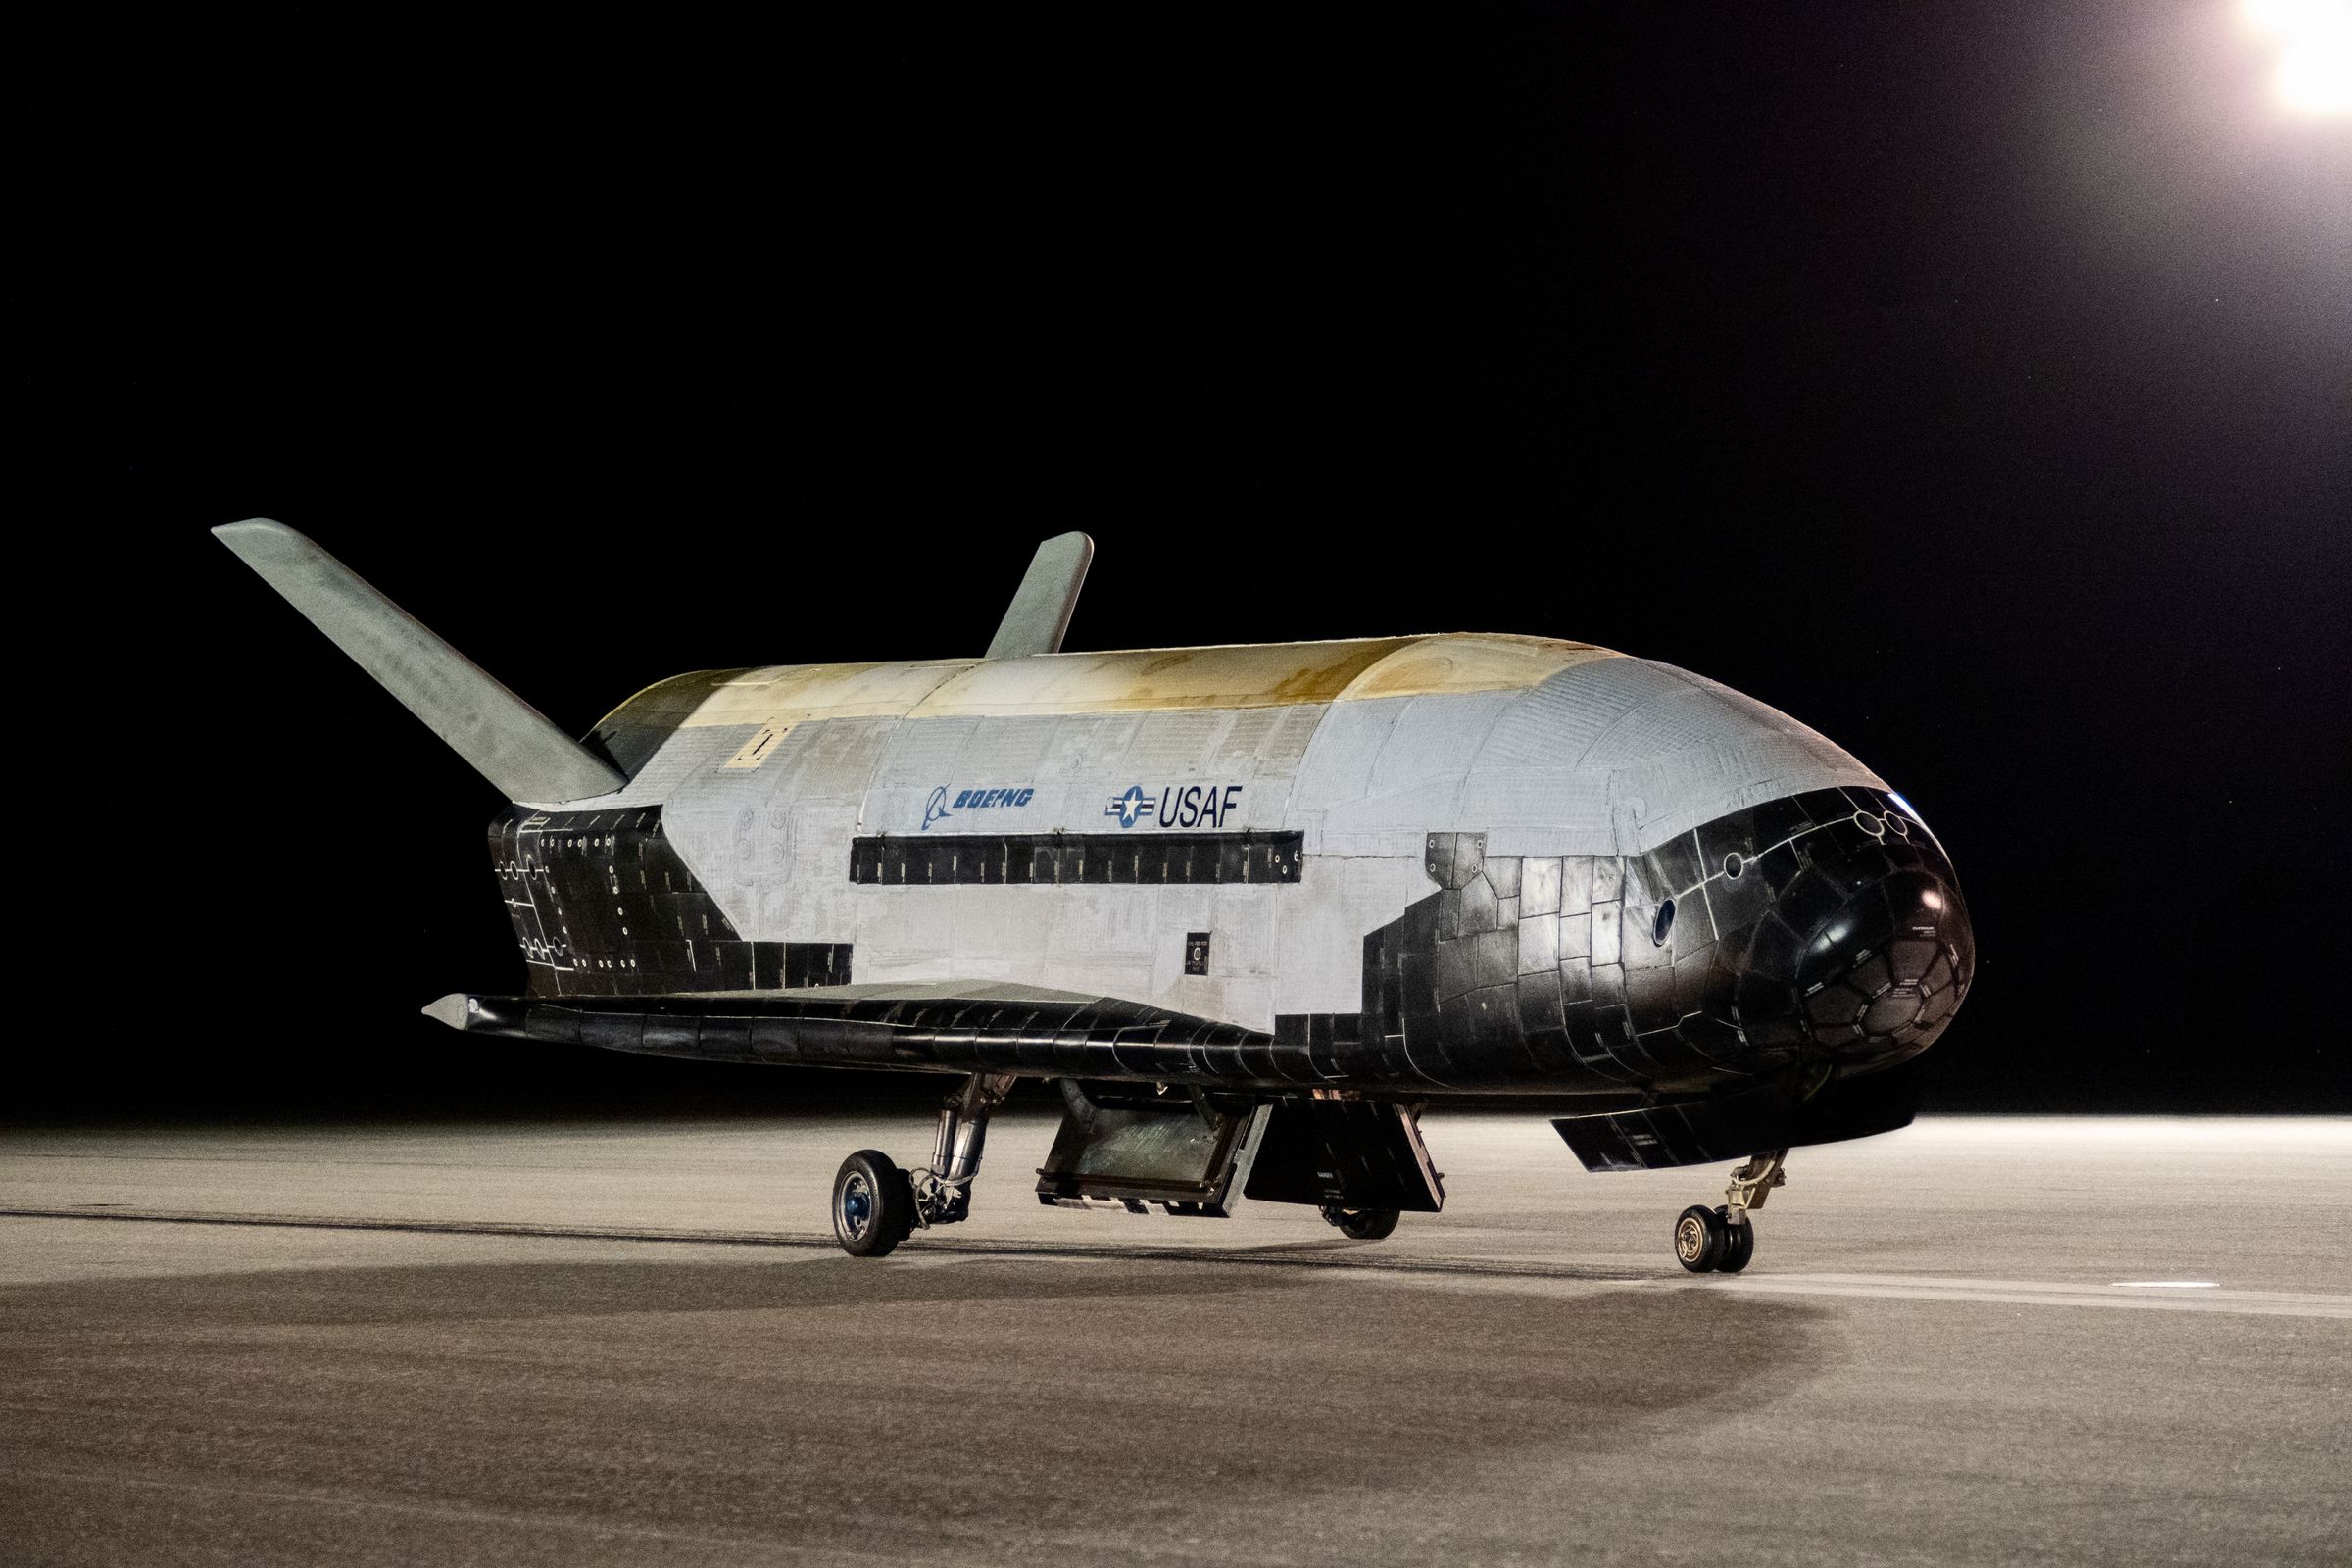 An image showing the X-37B spaceplane upon landing